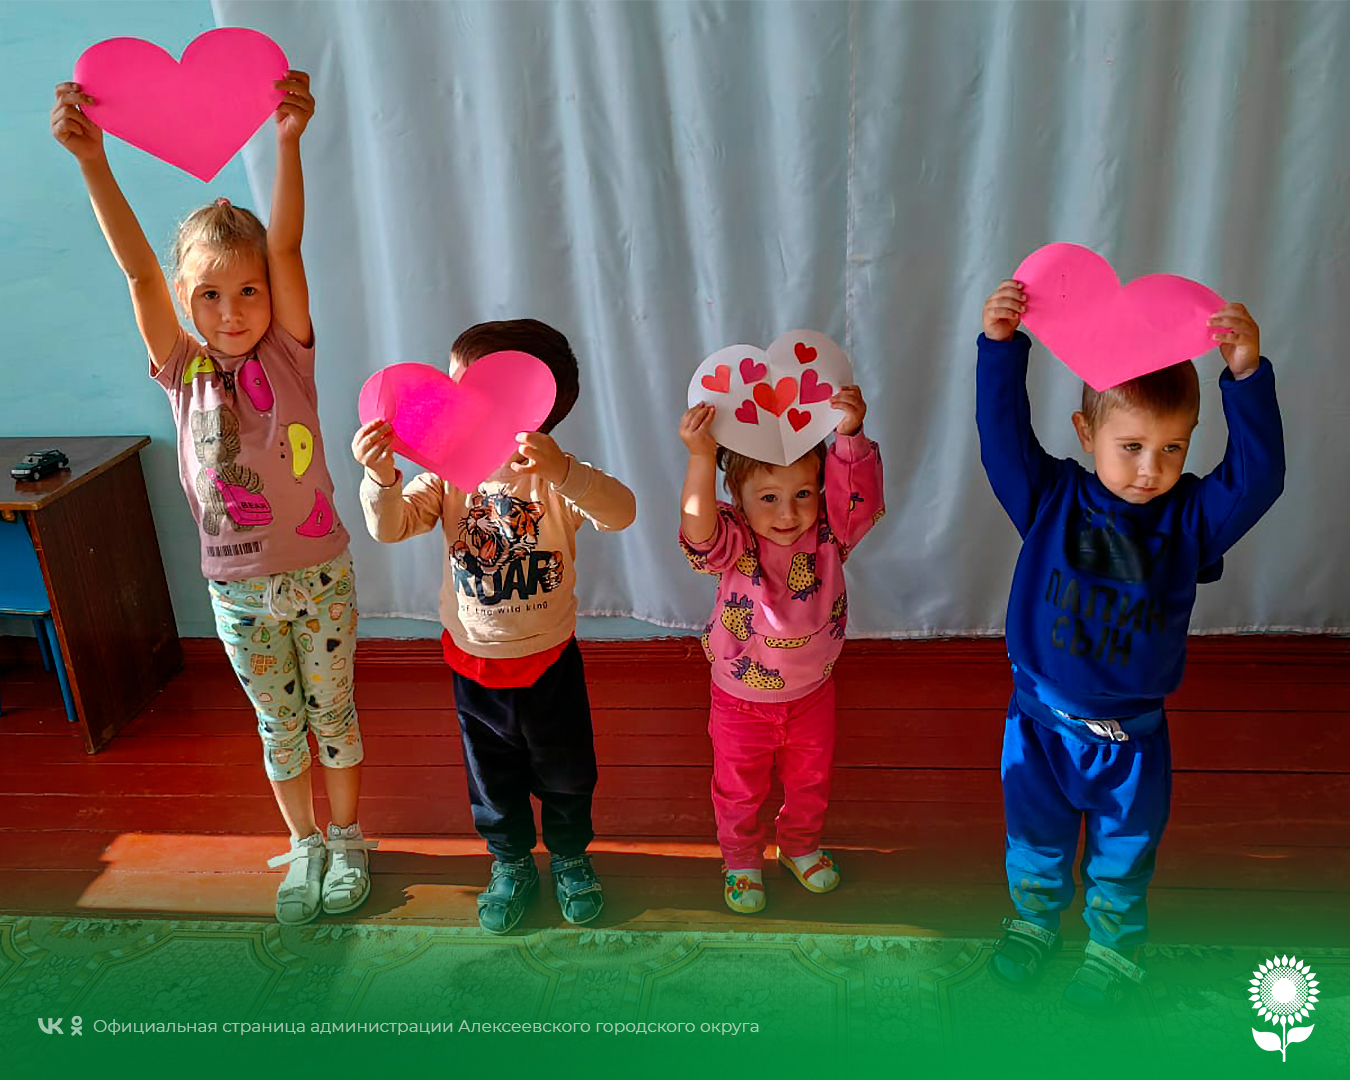 В детских садах Алексеевского городского округа прошла акция «День сердца».